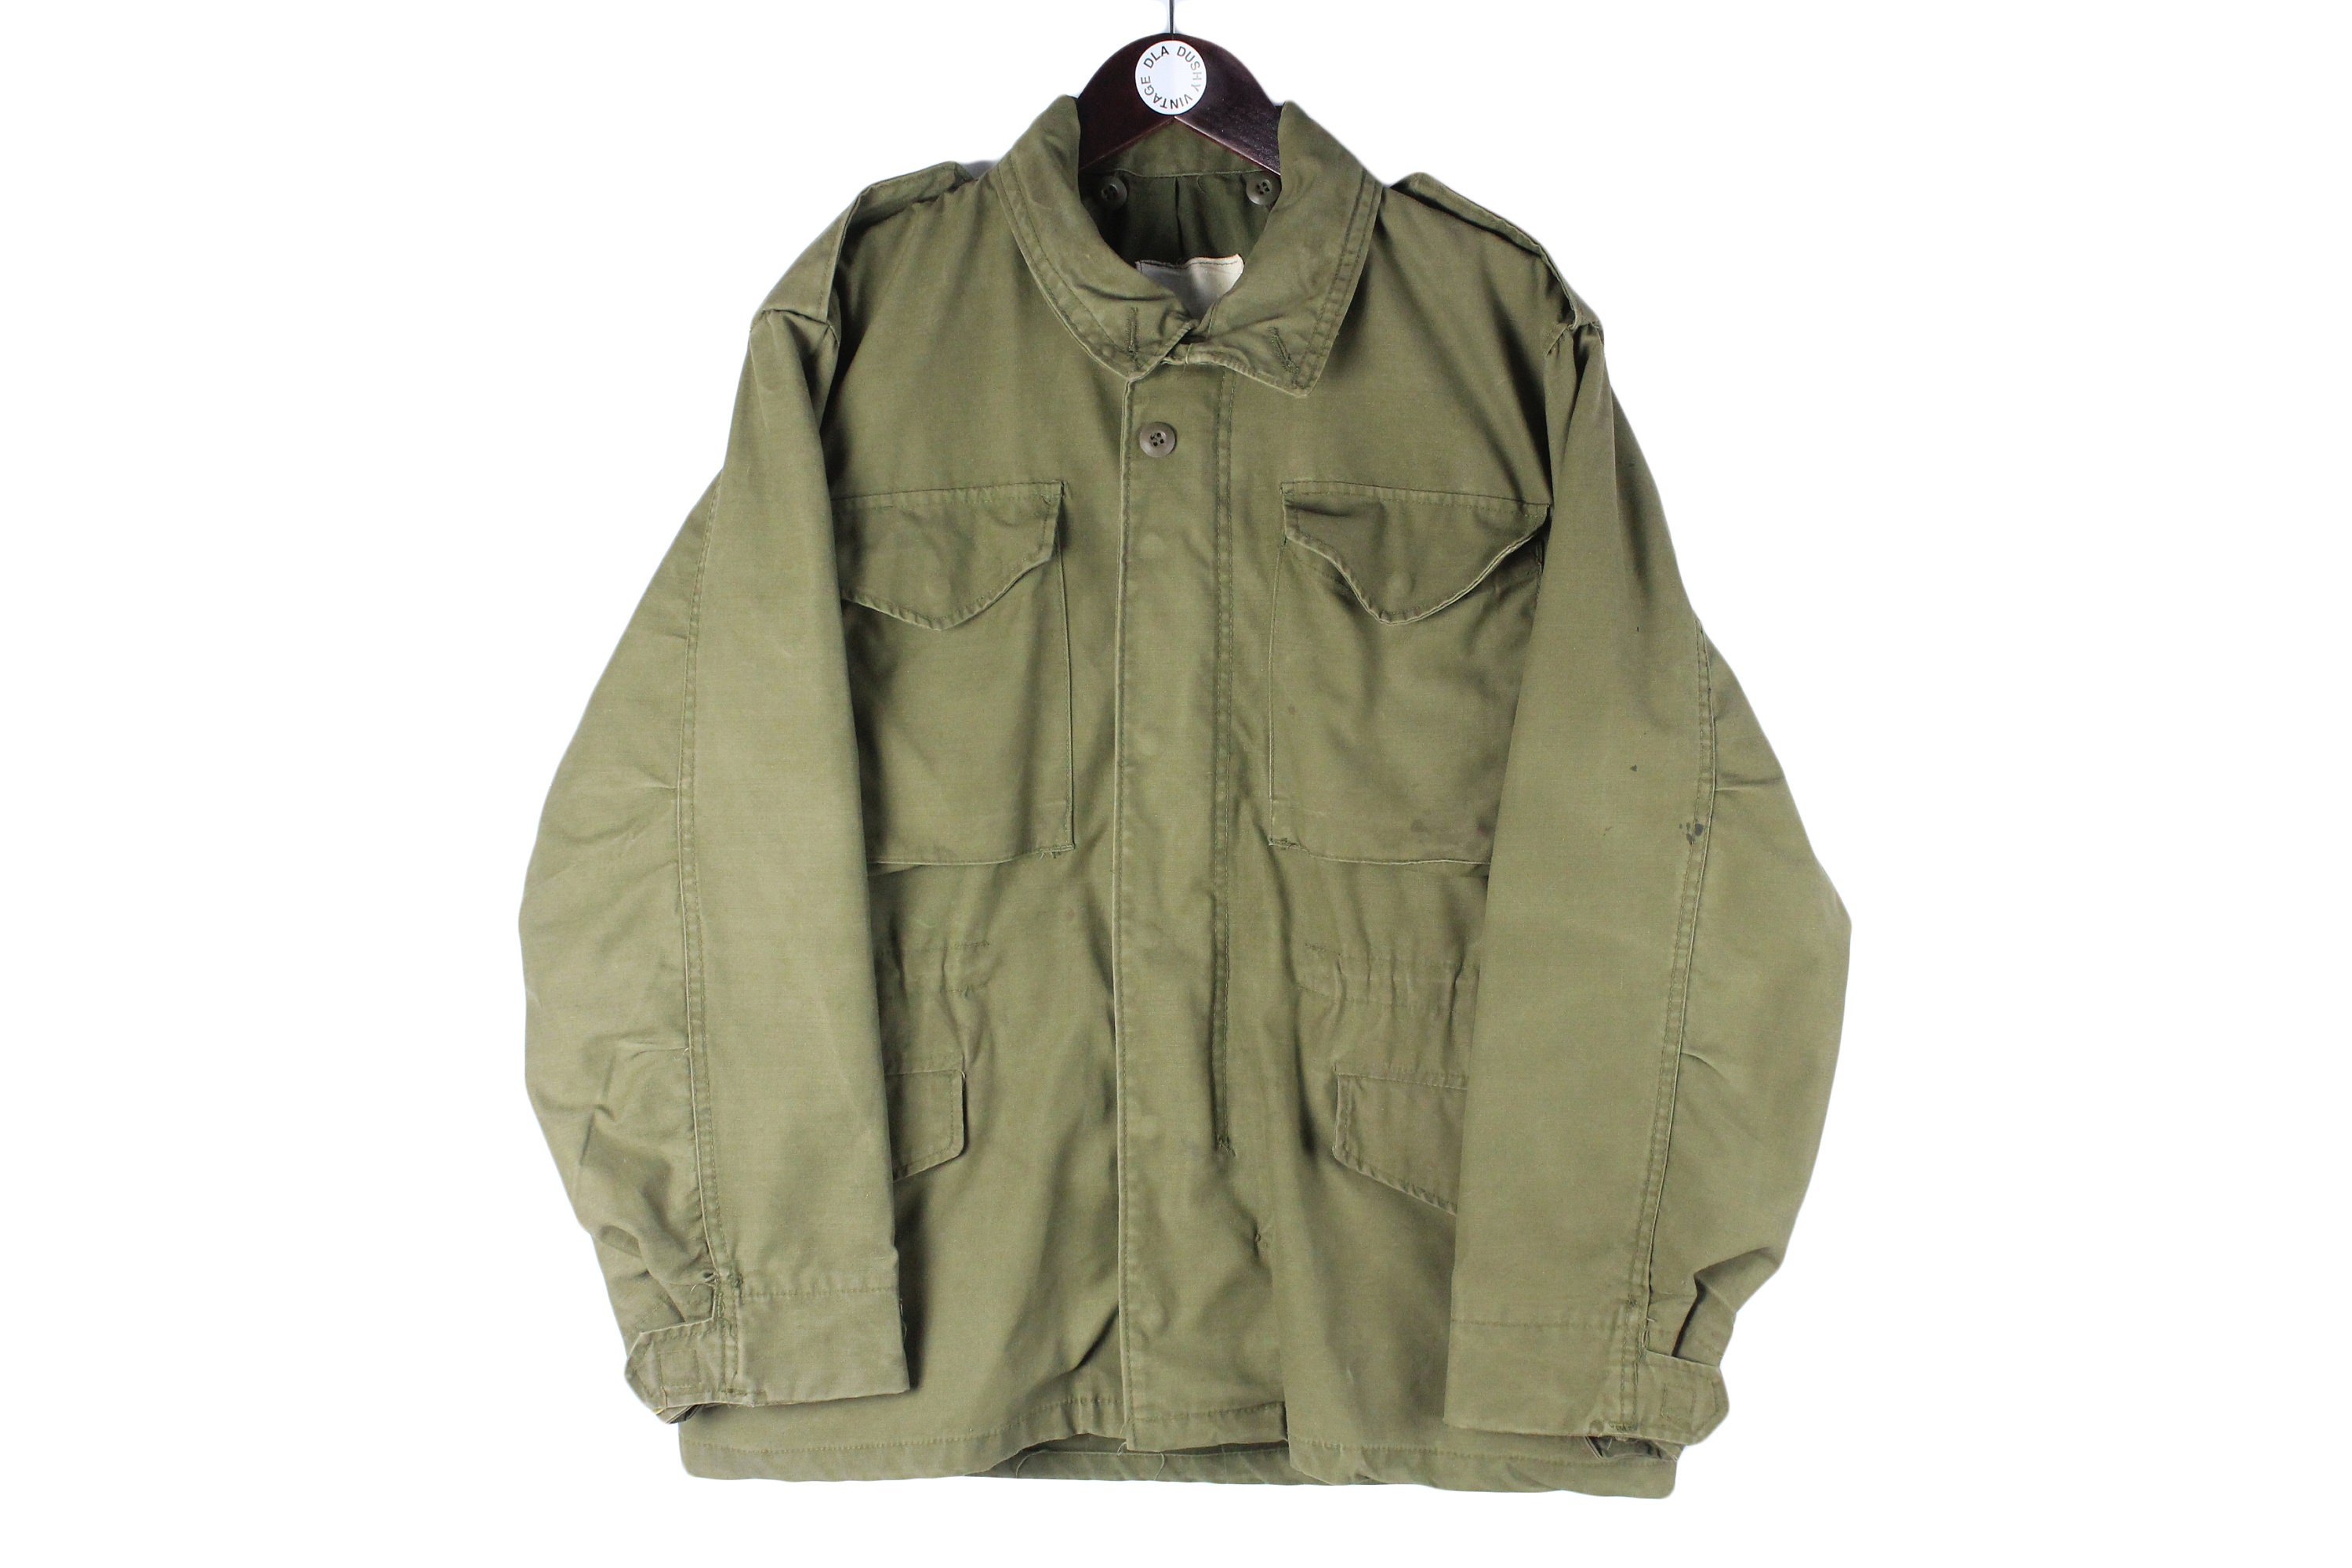 Vintage M65 Military Army Jacket Khaki Clothing - Etsy